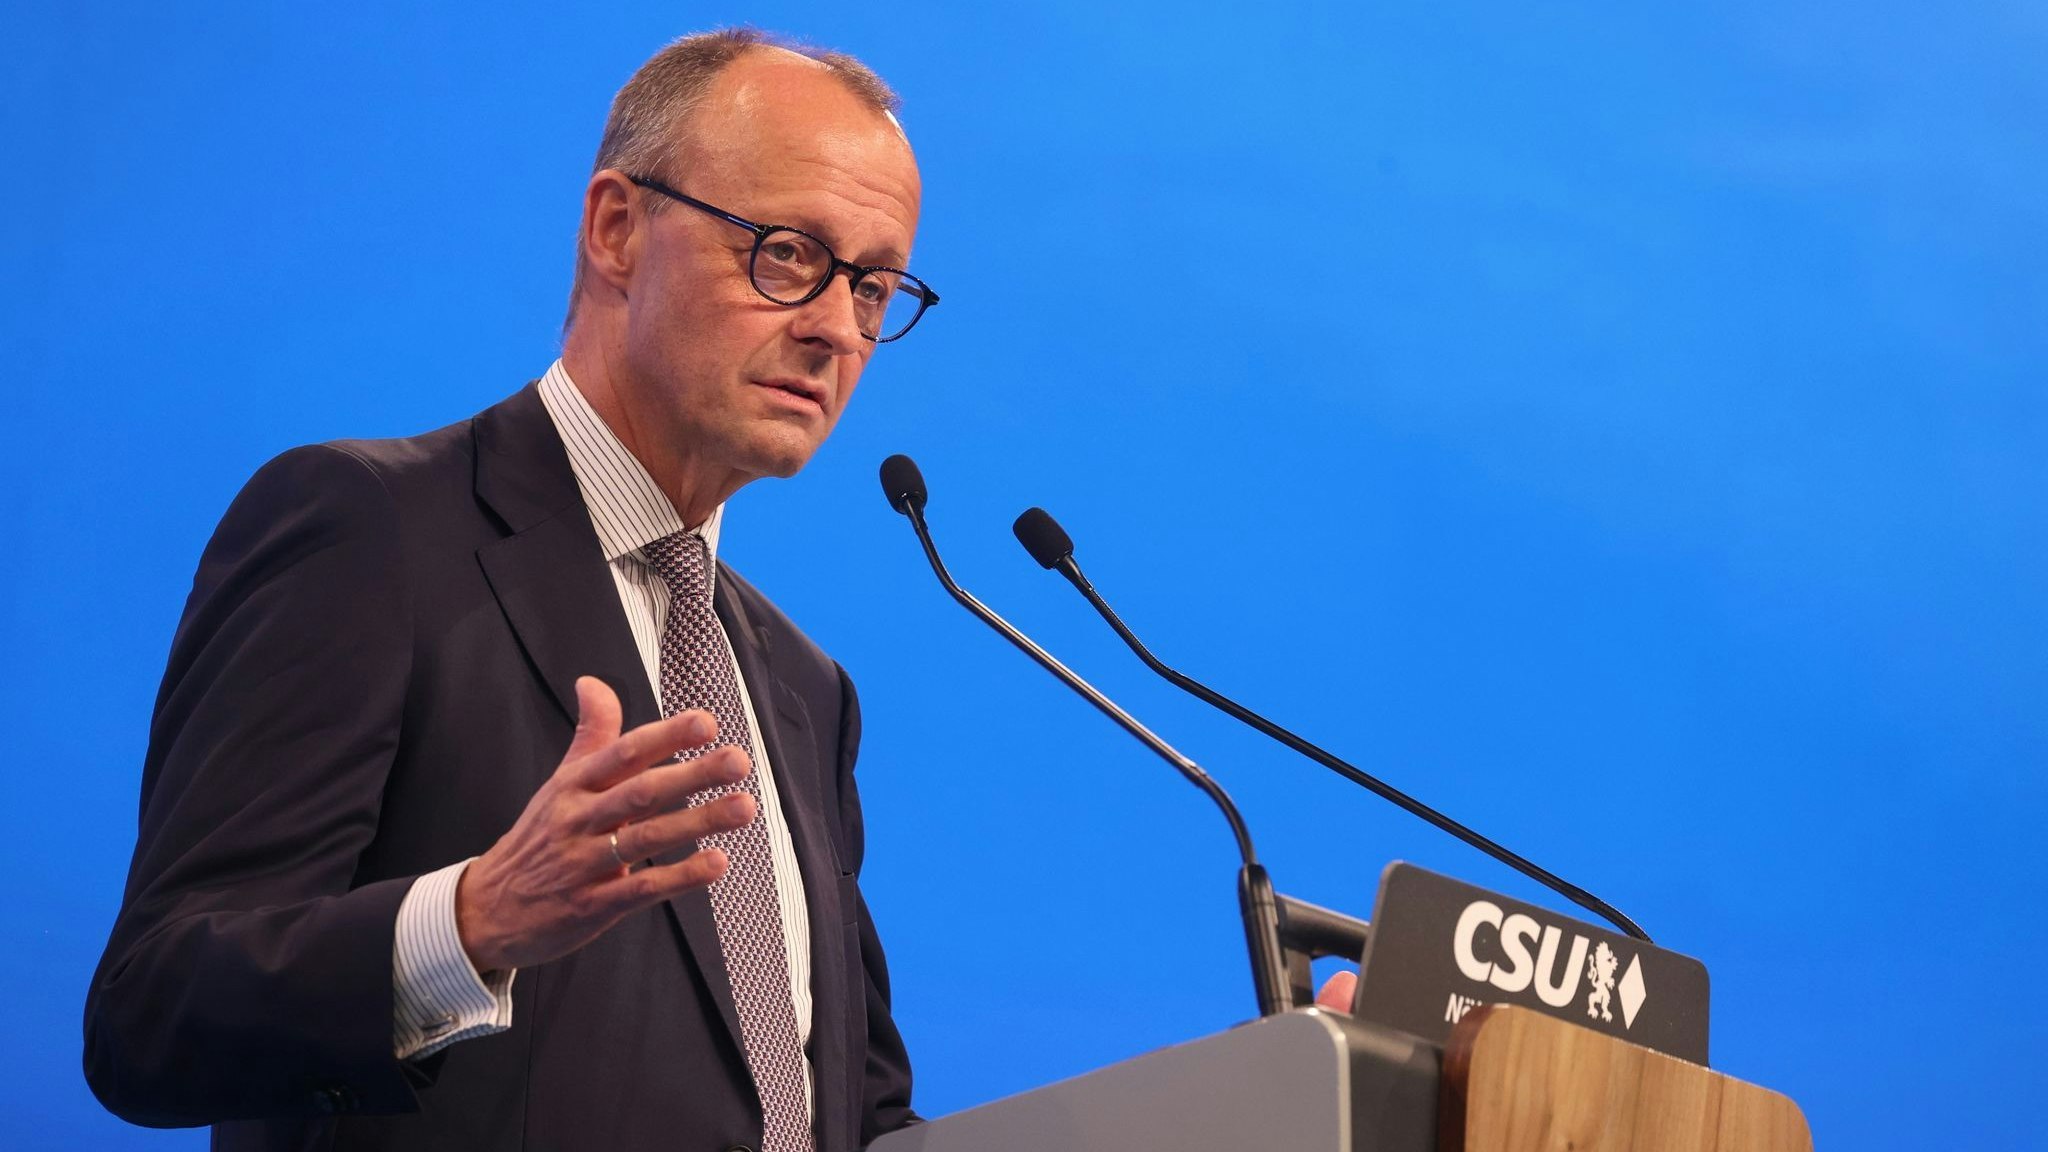 Friedrich Merz ist Vorsitzender der CDU. Foto: dpa/Hildenbrand